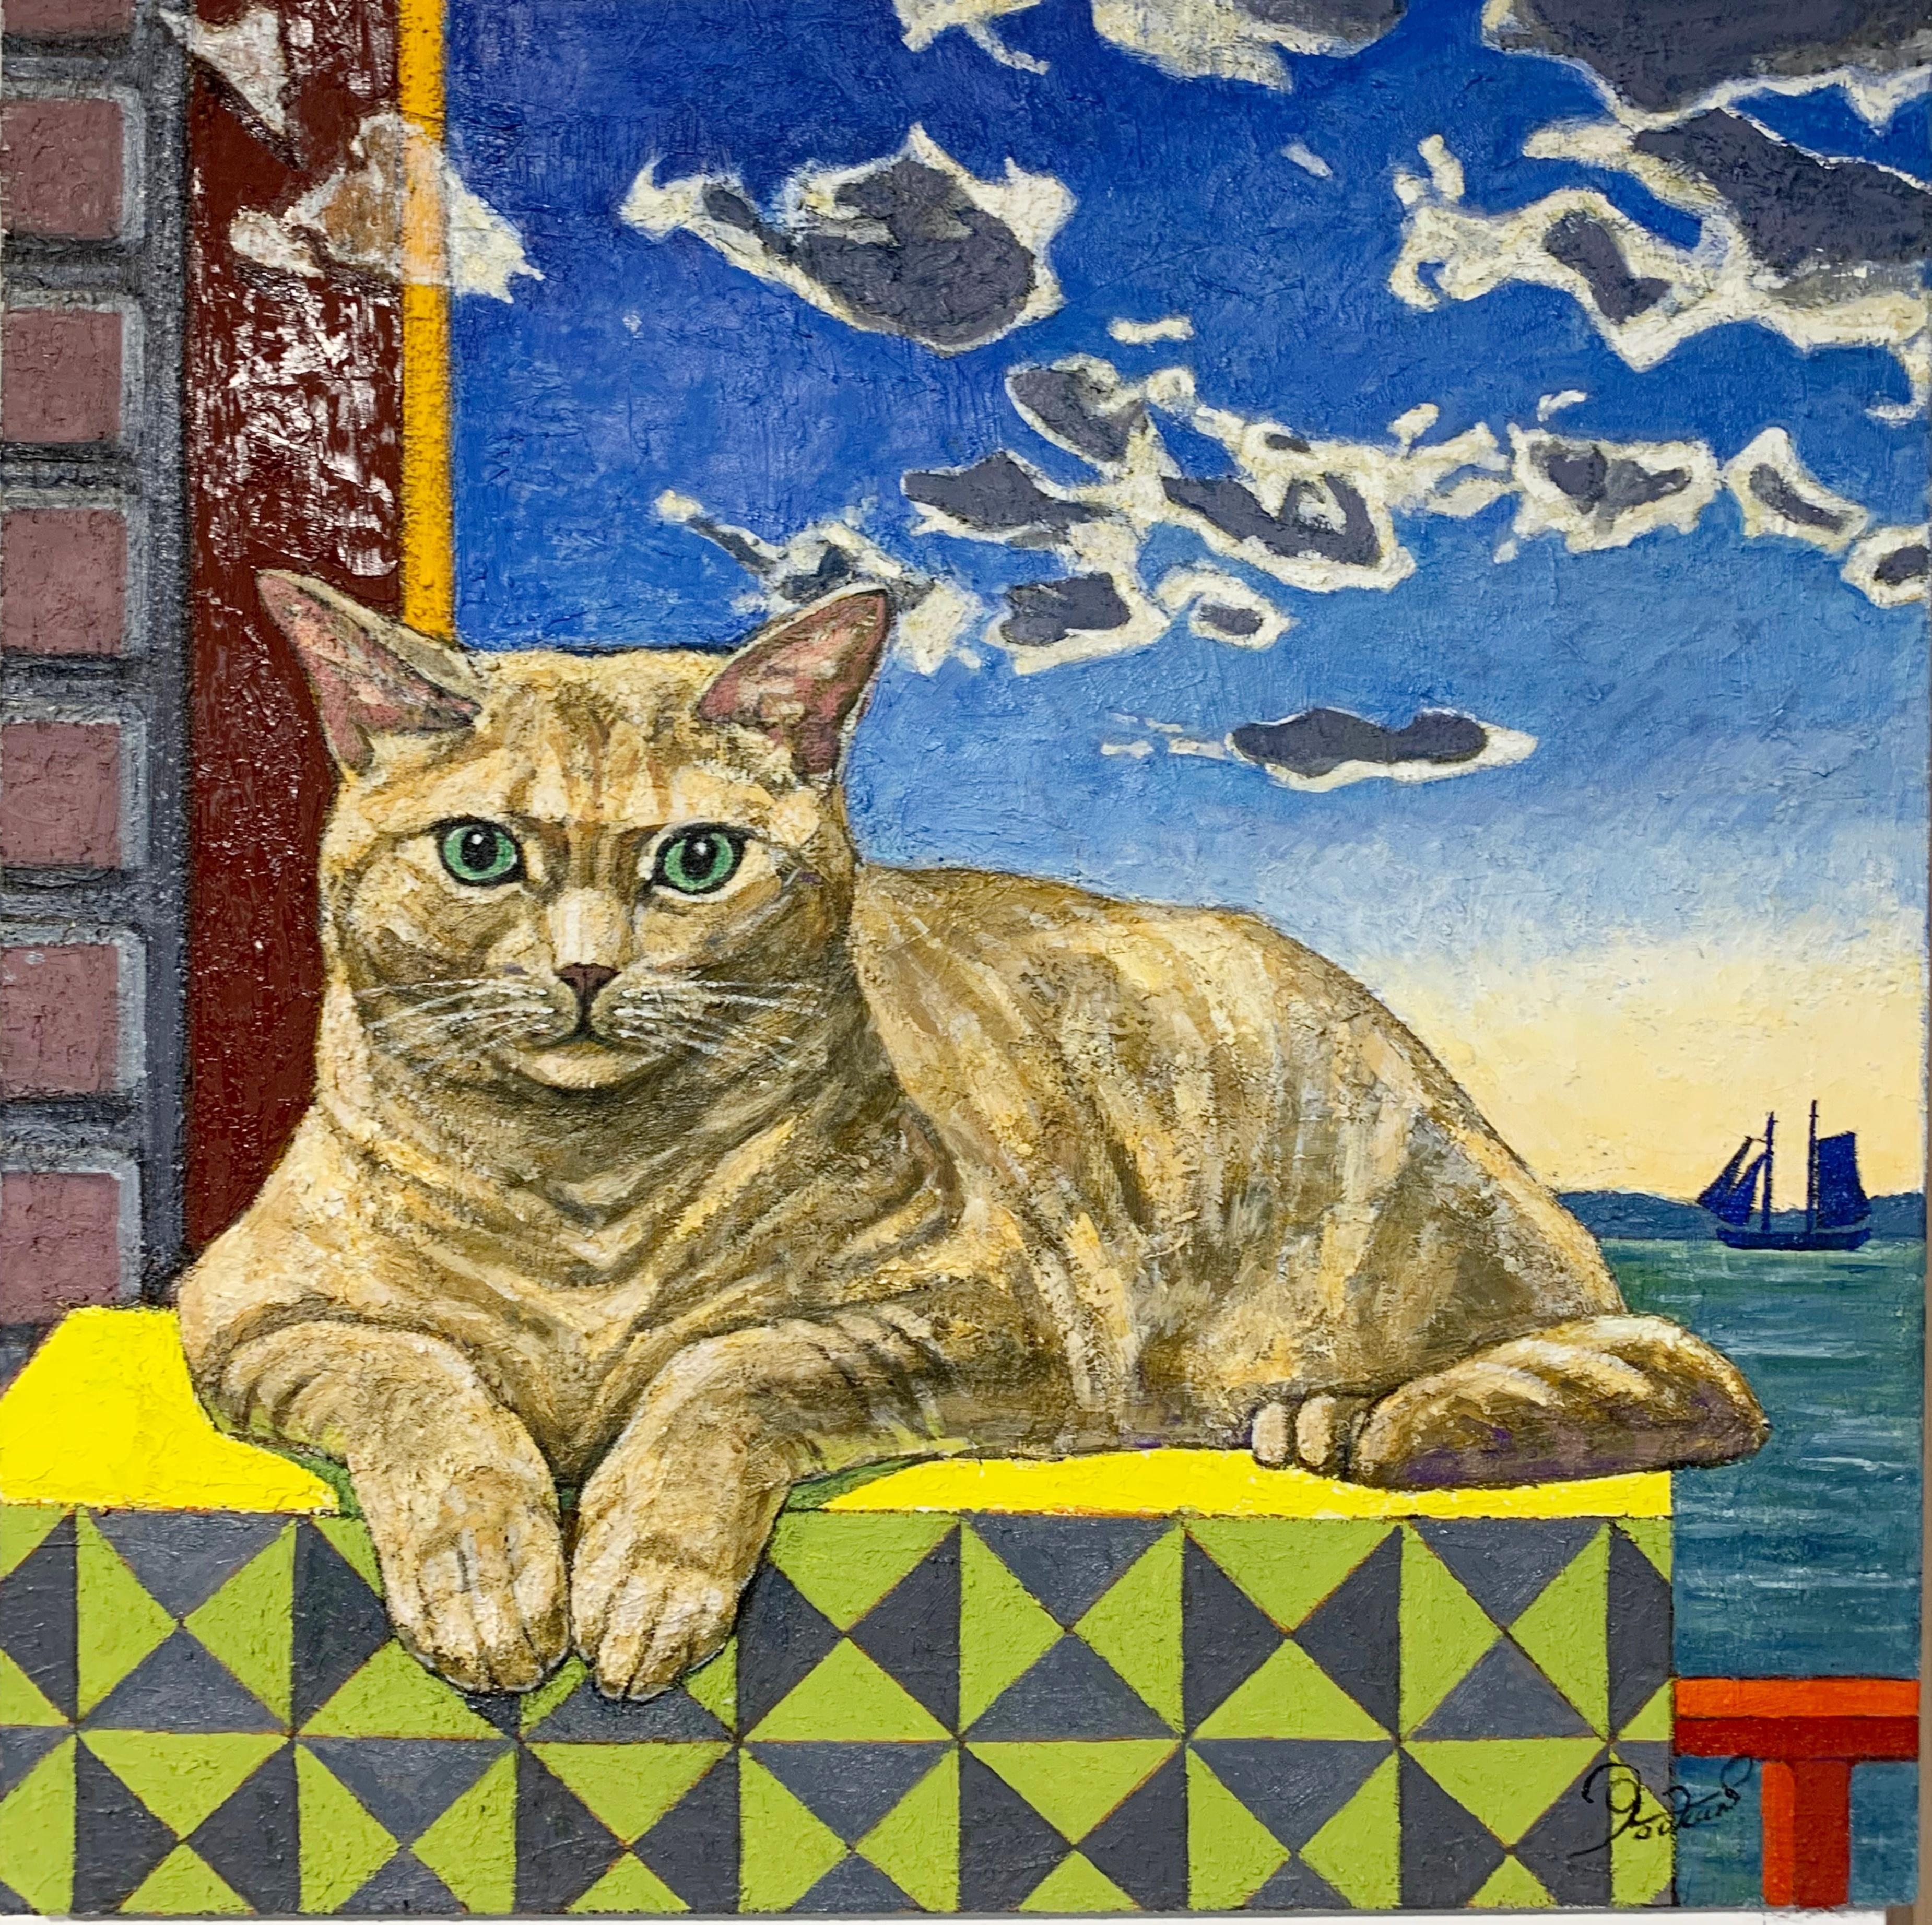 Yookan Westfield Figurative Painting – Orange Cat's Thoughts (Originalgemälde des bekannten japanisch-amerikanischen Malers)